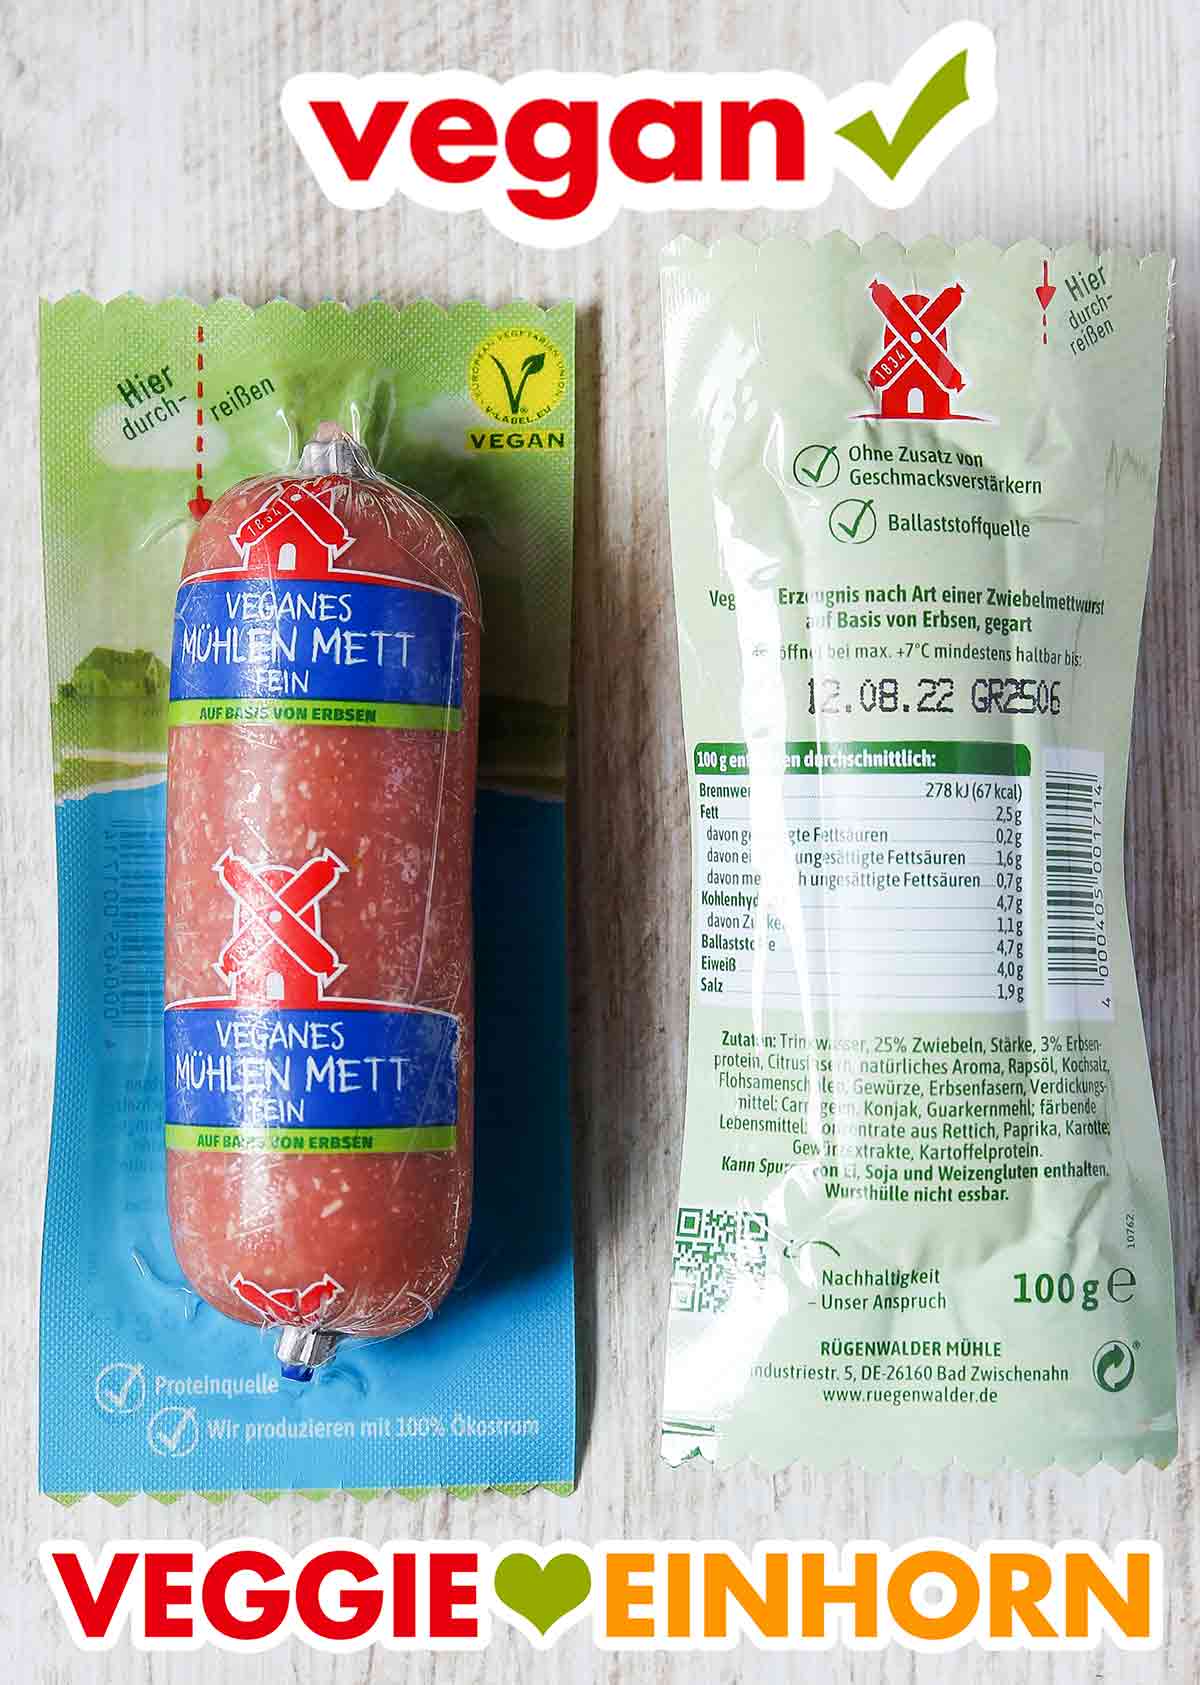 Vorder- und Rückseite der Verpackung des veganen Rügenwalder Mühlen Metts